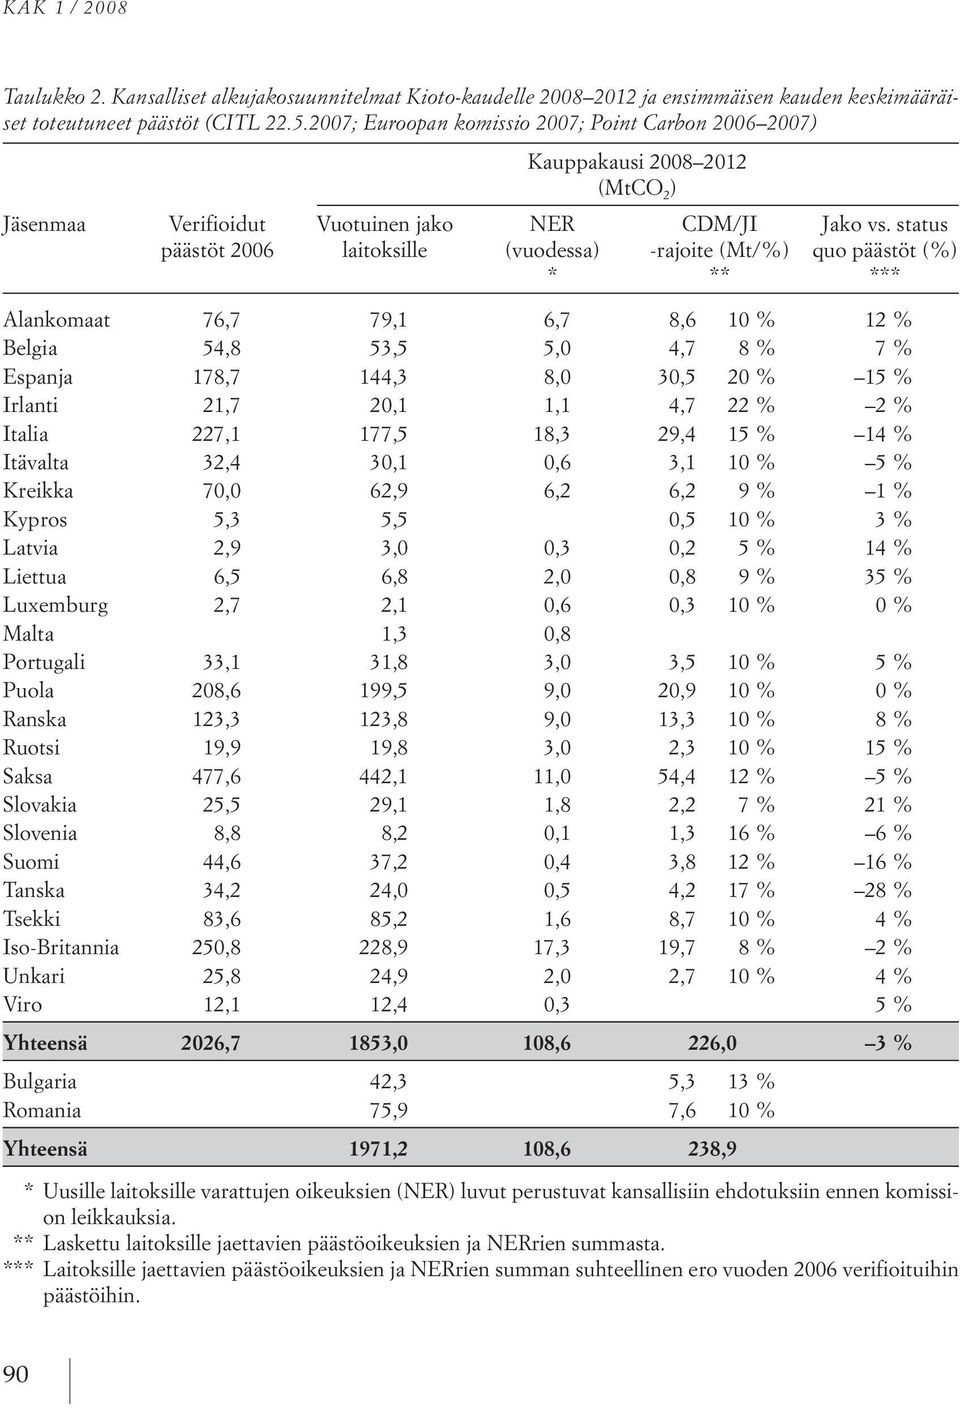 status päästöt 2006 laitoksille (vuodessa) rajoite (Mt/%) quo päästöt (%) * ** *** alankomaat 76,7 79,1 6,7 8,6 10 % 12% Belgia 54,8 53,5 5,0 4,7 8% 7% espanja 178,7 144,3 8,0 30,5 20 % 15 % irlanti